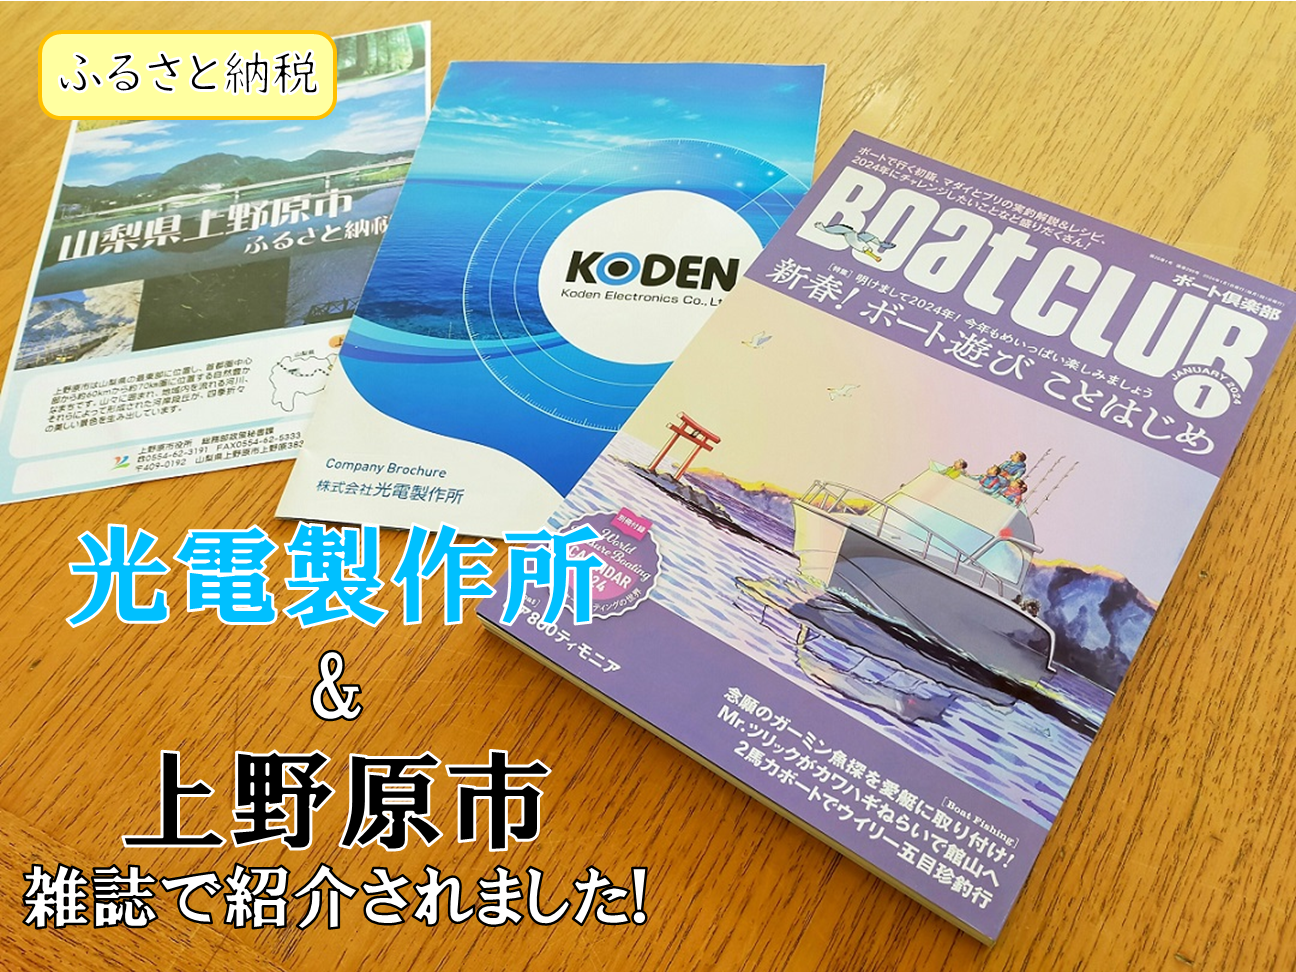 光電製作所&上野原市 雑誌で紹介されました　後ろ側に上野原市ふるさと納税のパンフレット、KODENの会社紹介、BoatCLUB1月号